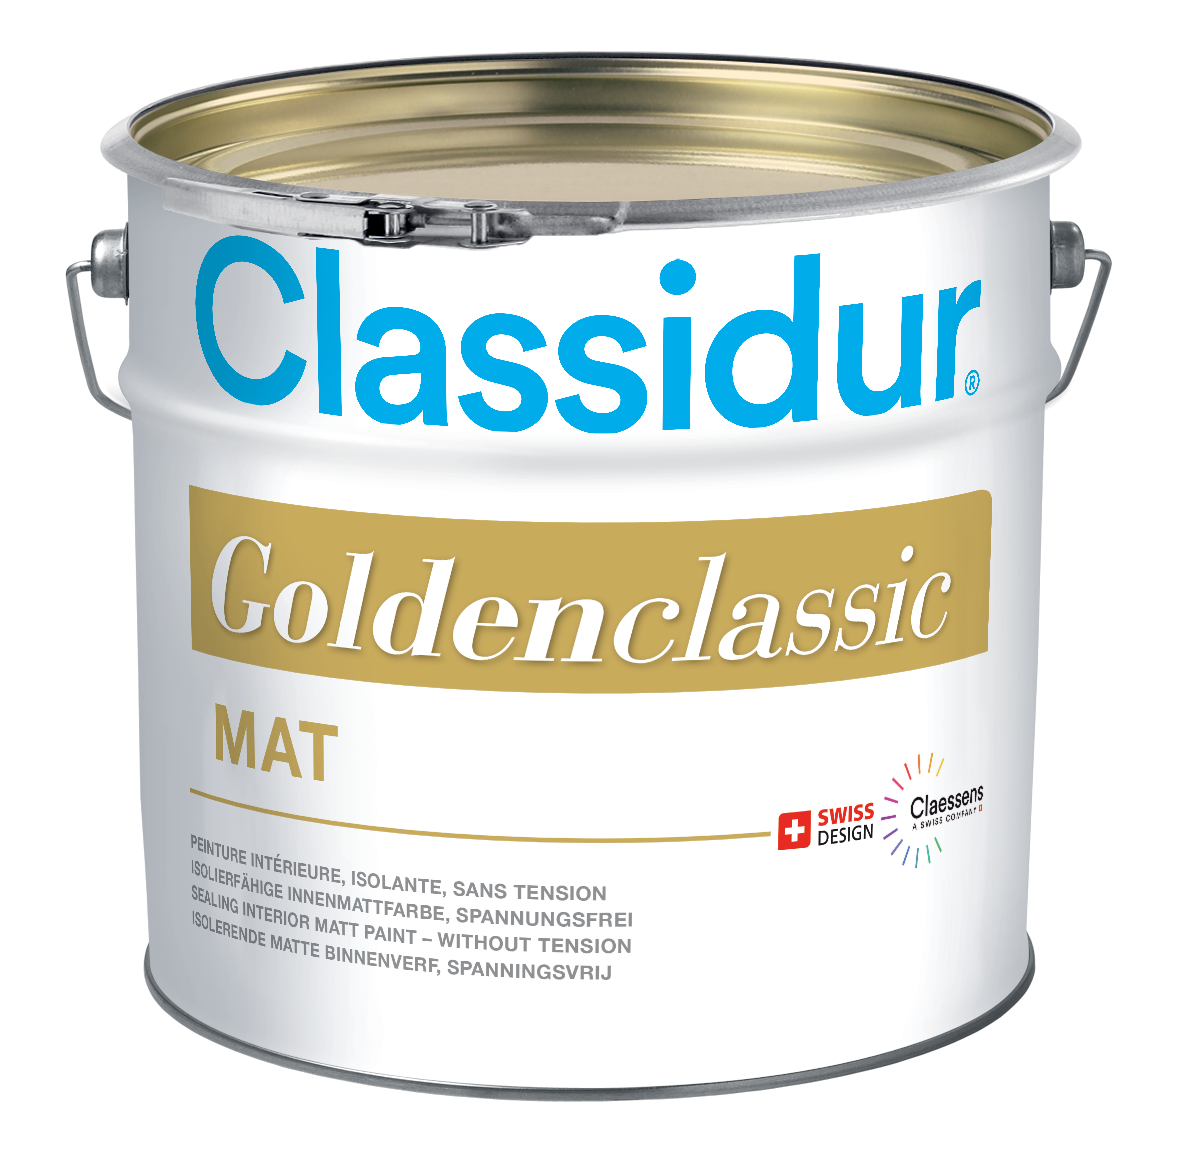 GoldenClassic - Classidur